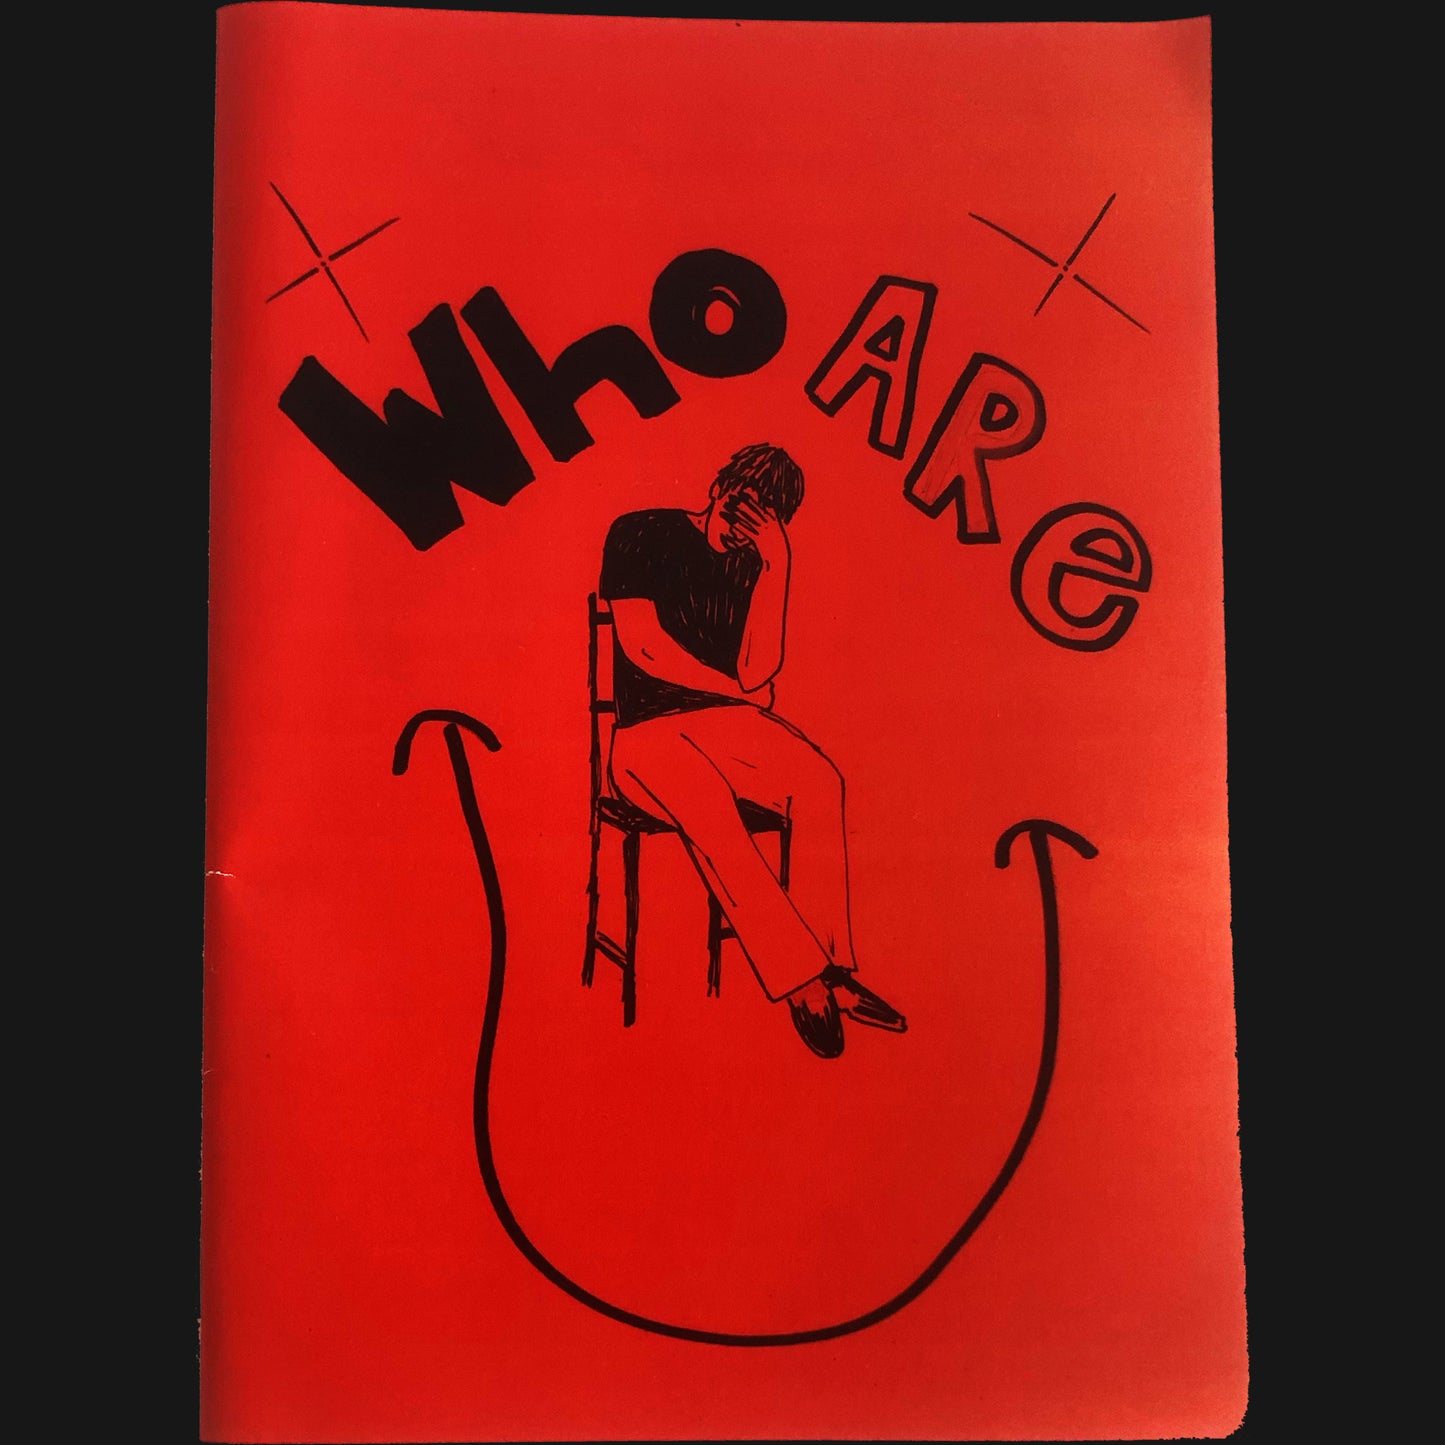 DOUGLAS BENNETT - “WHO ARE U" BOOK